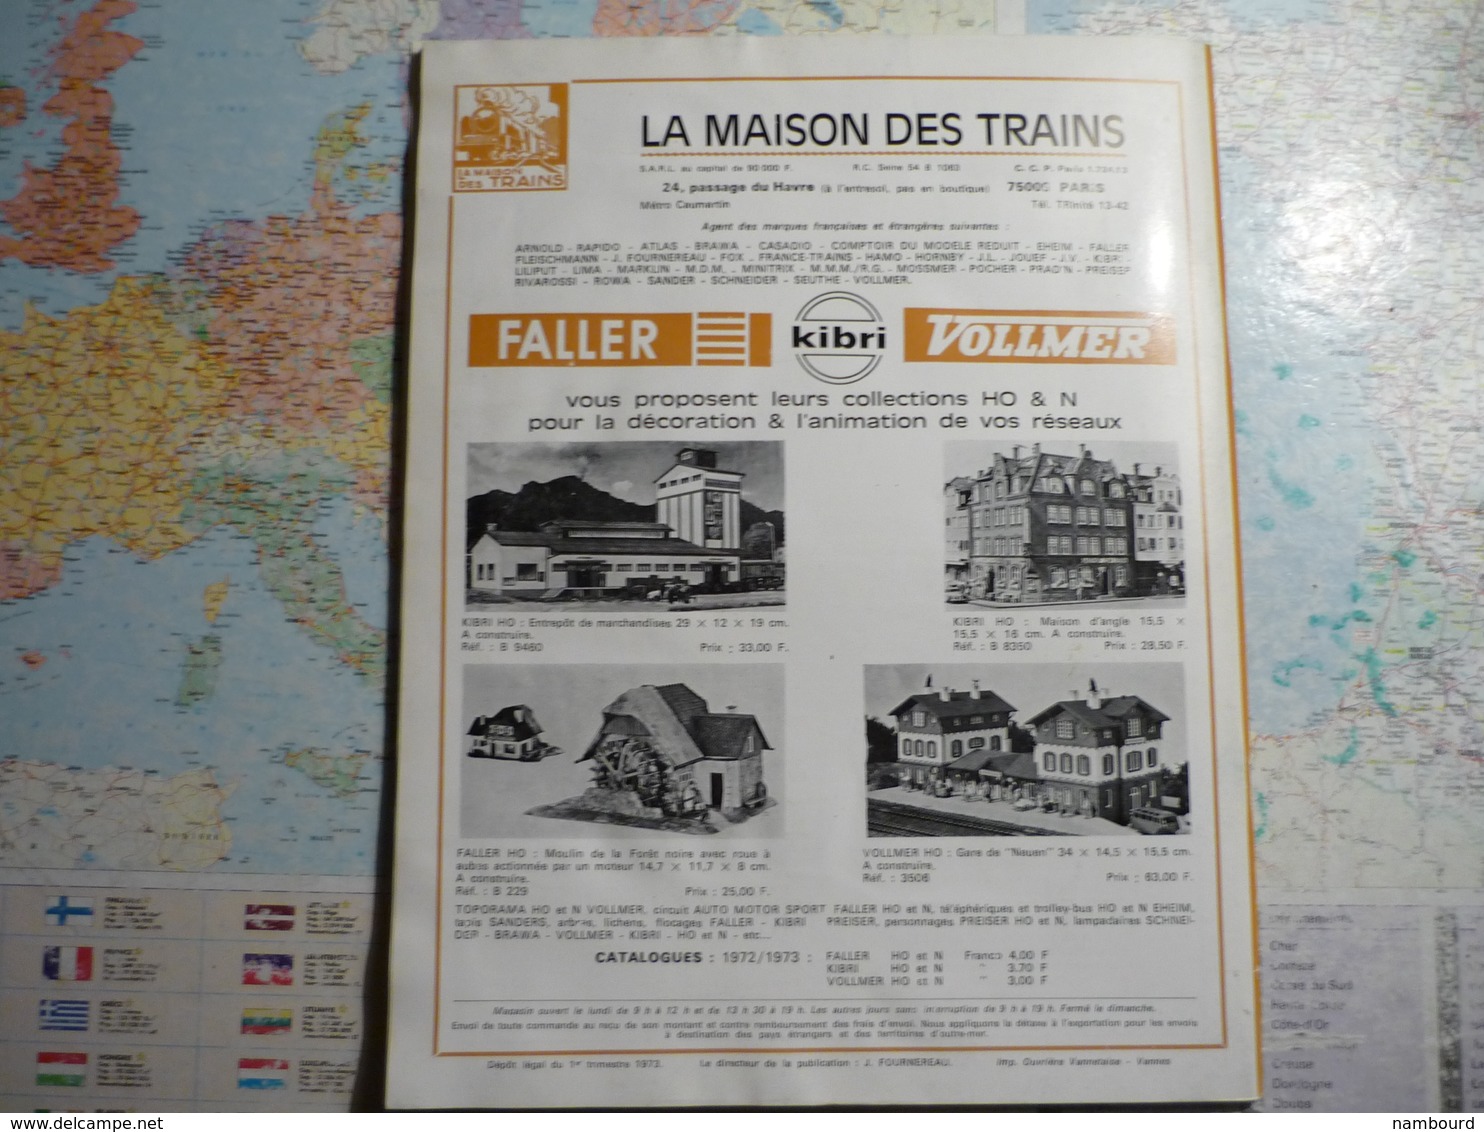 Loto revue N°335 Janvier 1973 avec supplément poster La "Napoléon"